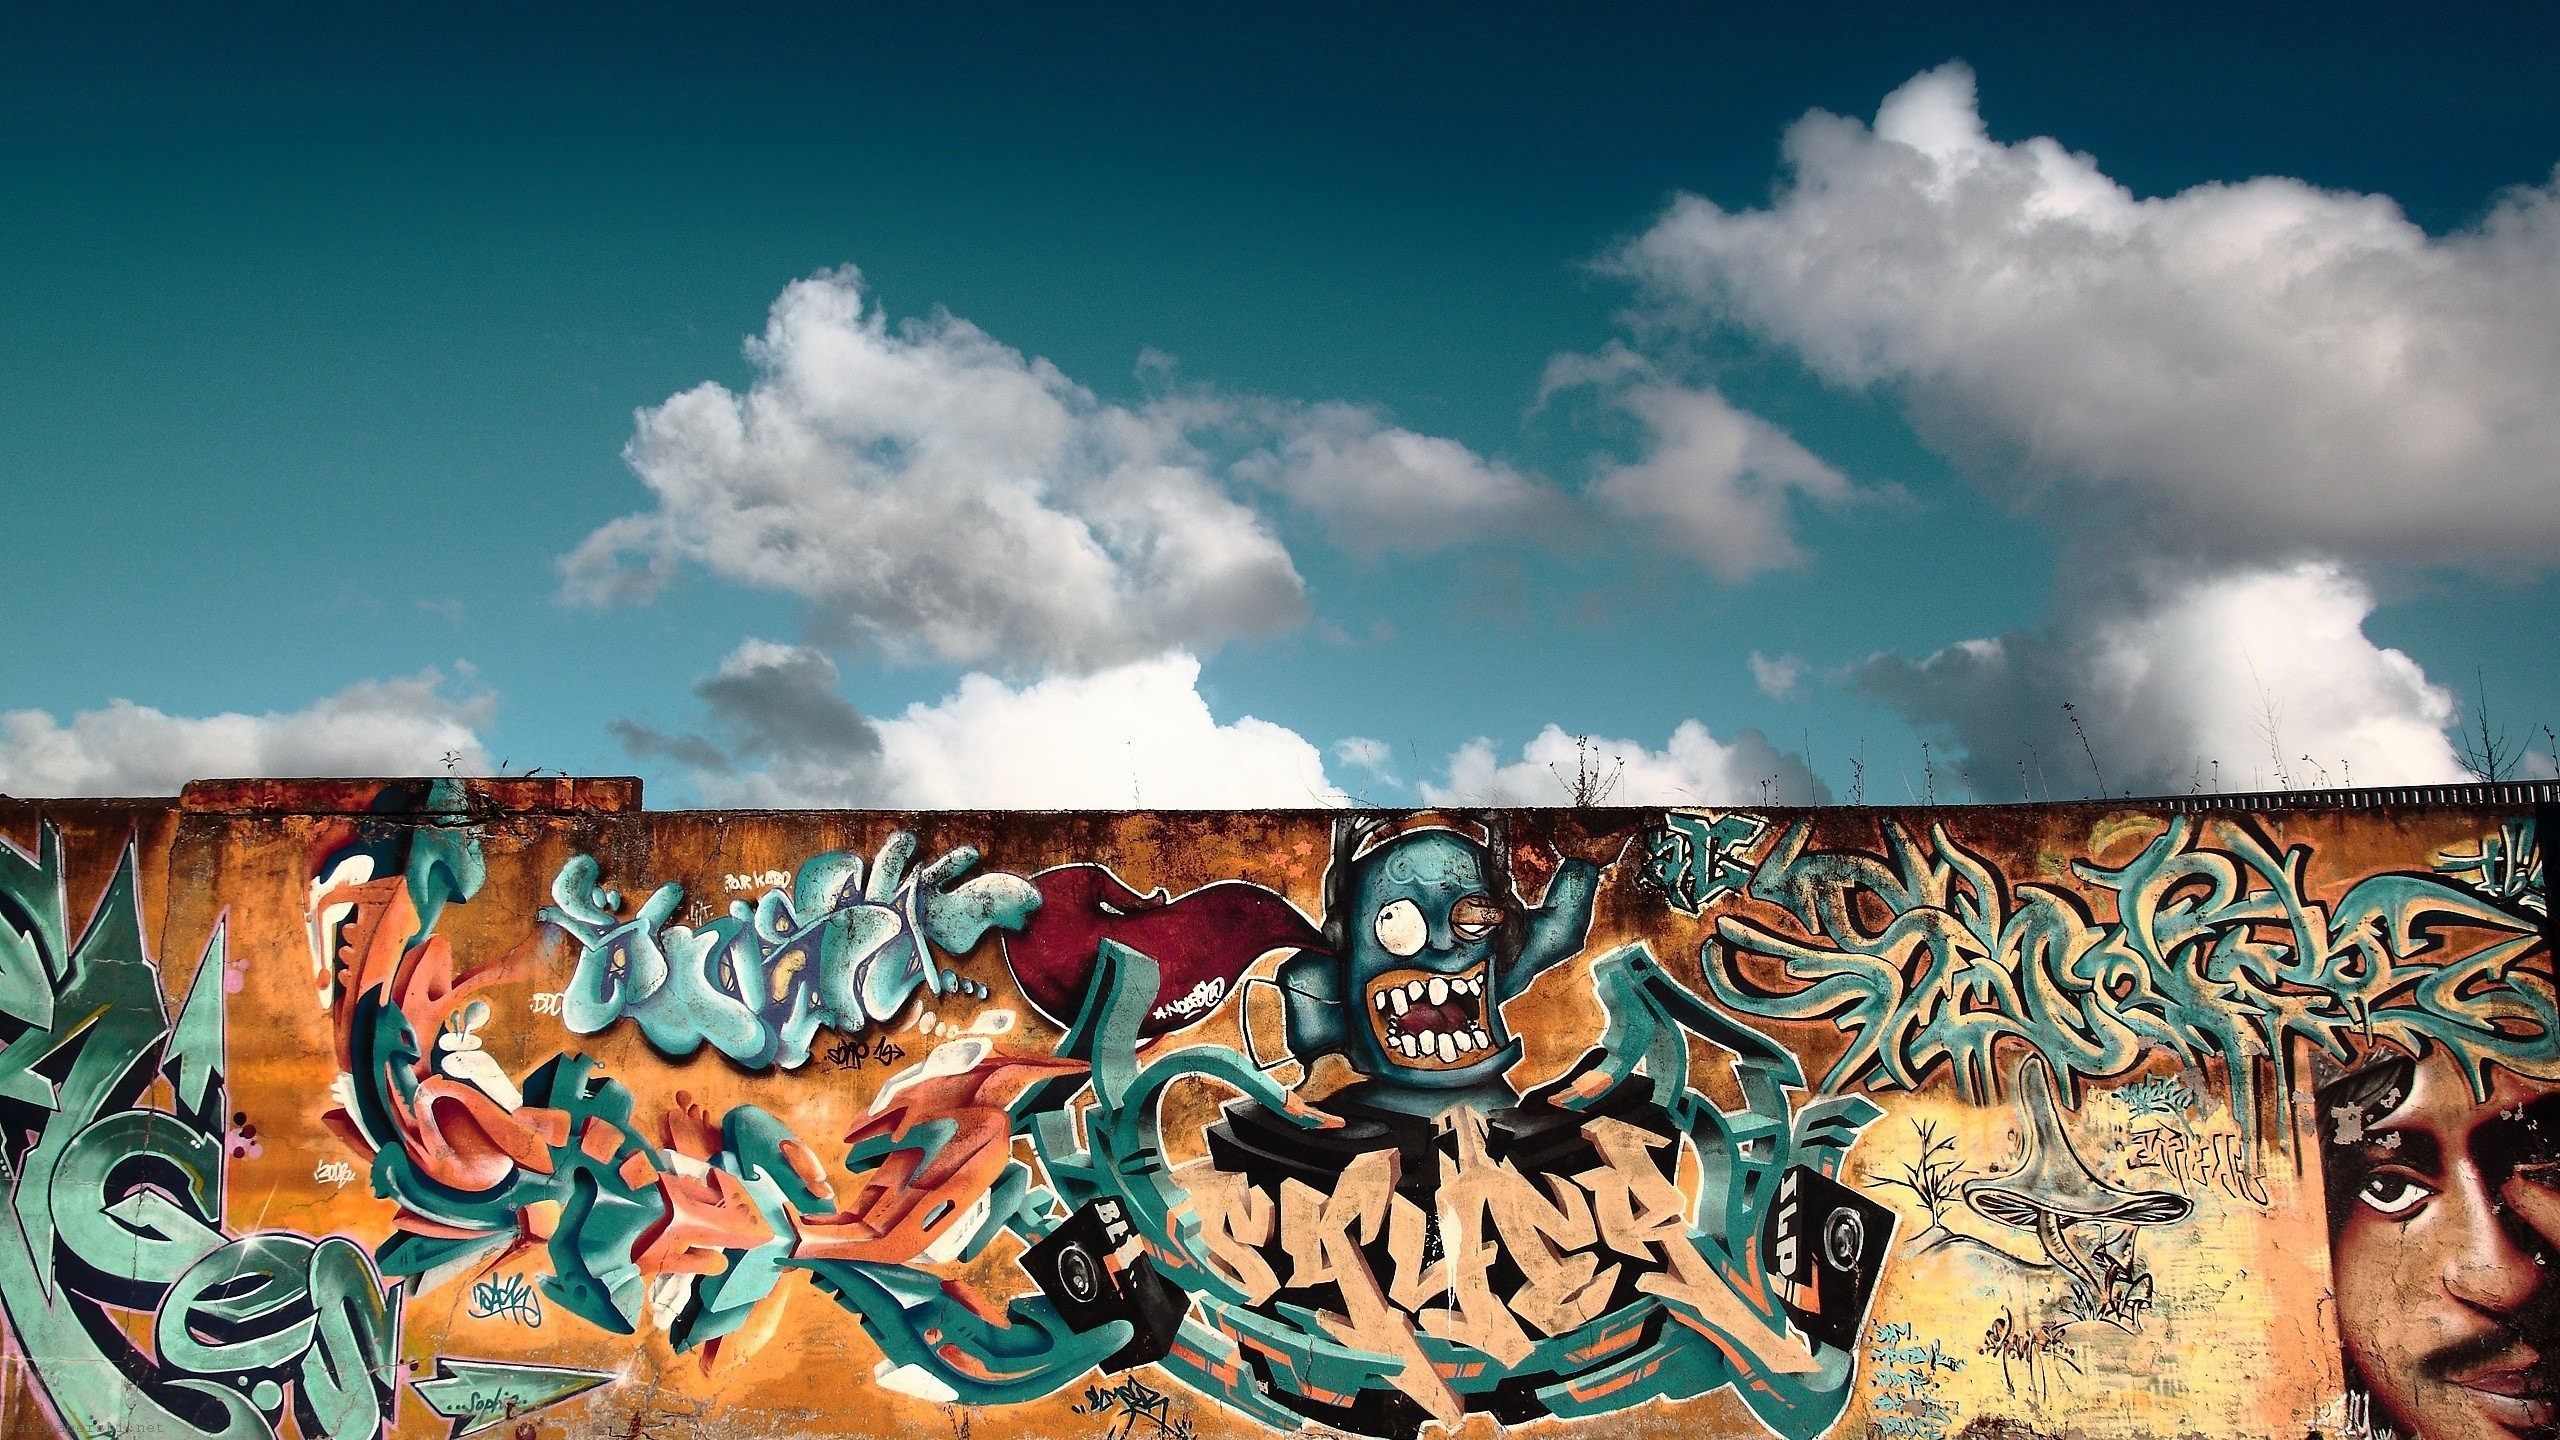 General 2560x1440 city sky Berlin berlin wall graffiti mural